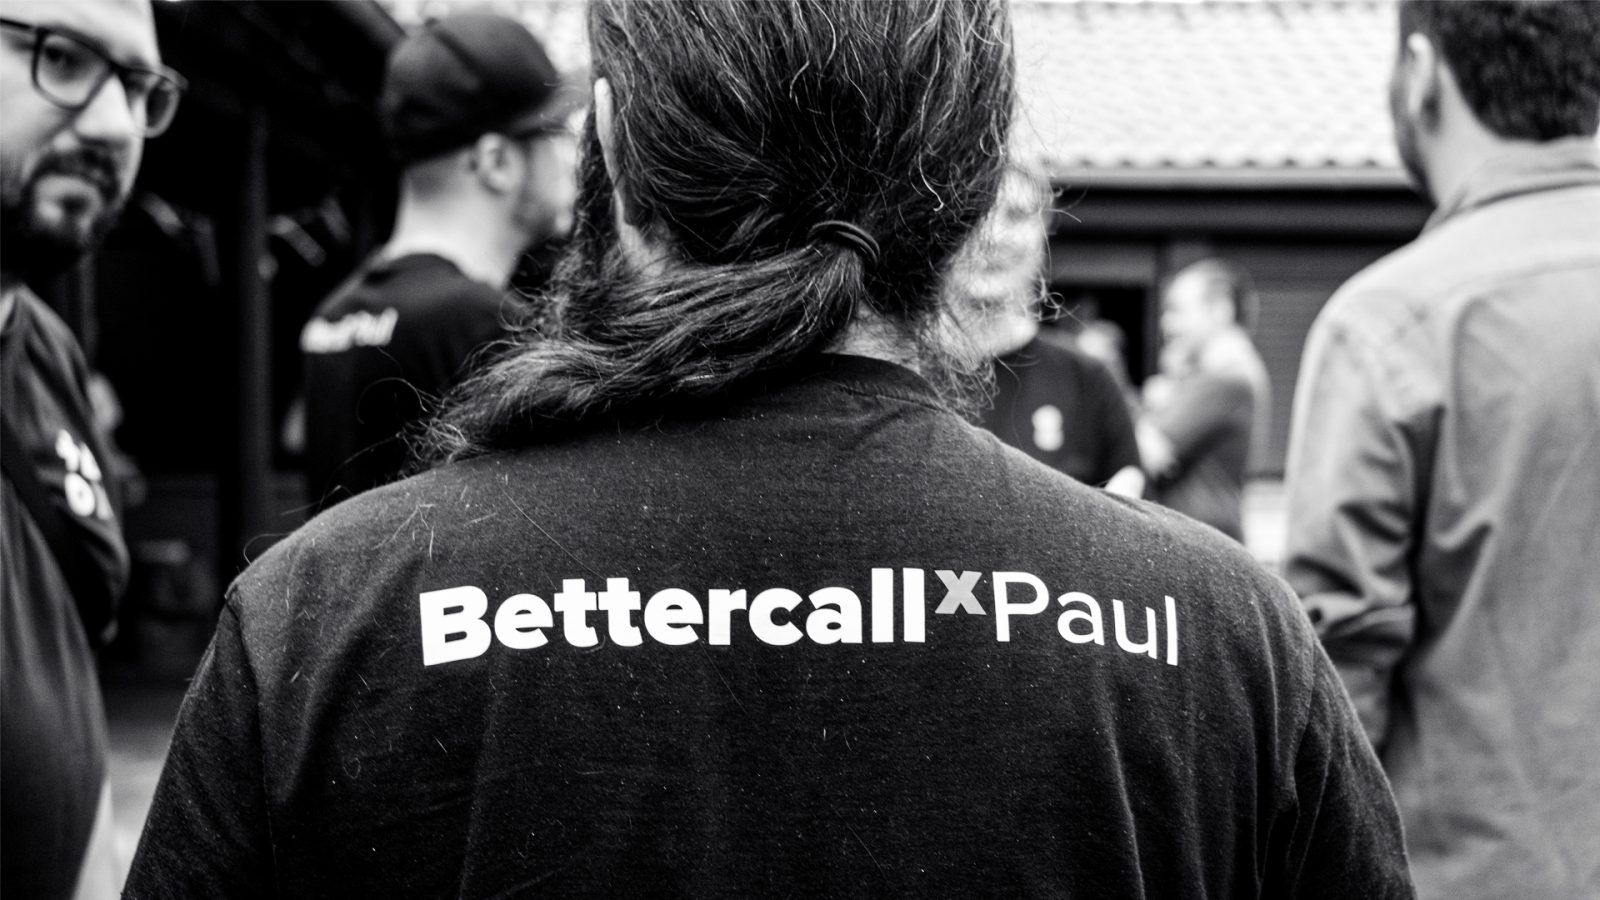 Der Rücken eines BCxP-Mitarbeiters ist zu sehen, er trägt ein T-Shirt mit der Aufschrift „BettercallPaul“.